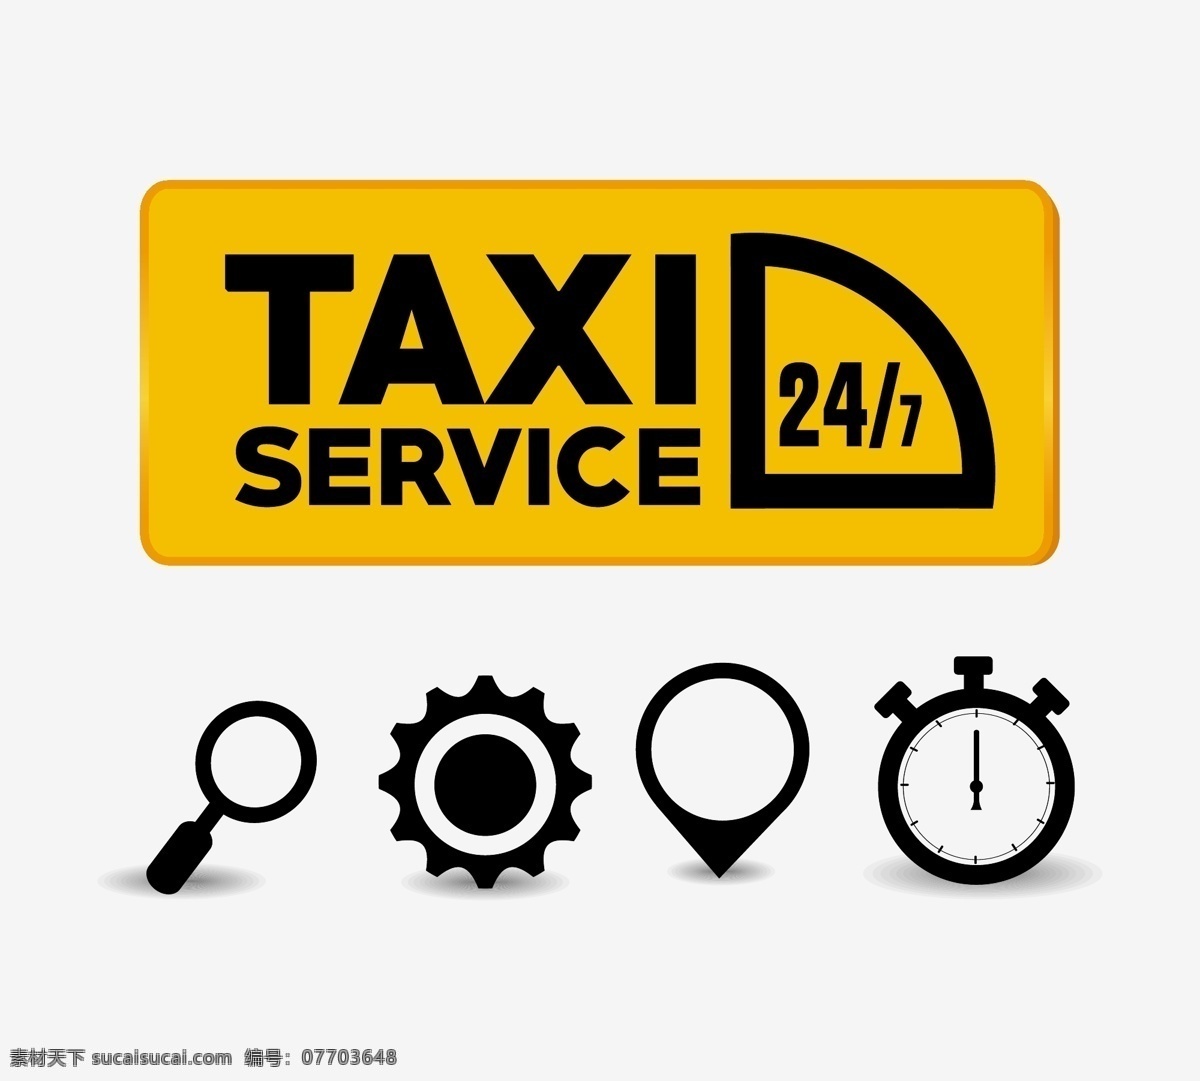 出租车 标签 标识设计 矢量 租车标志 出租车顶灯 的士 taxi 交通工具 现代科技 矢量素材 白色